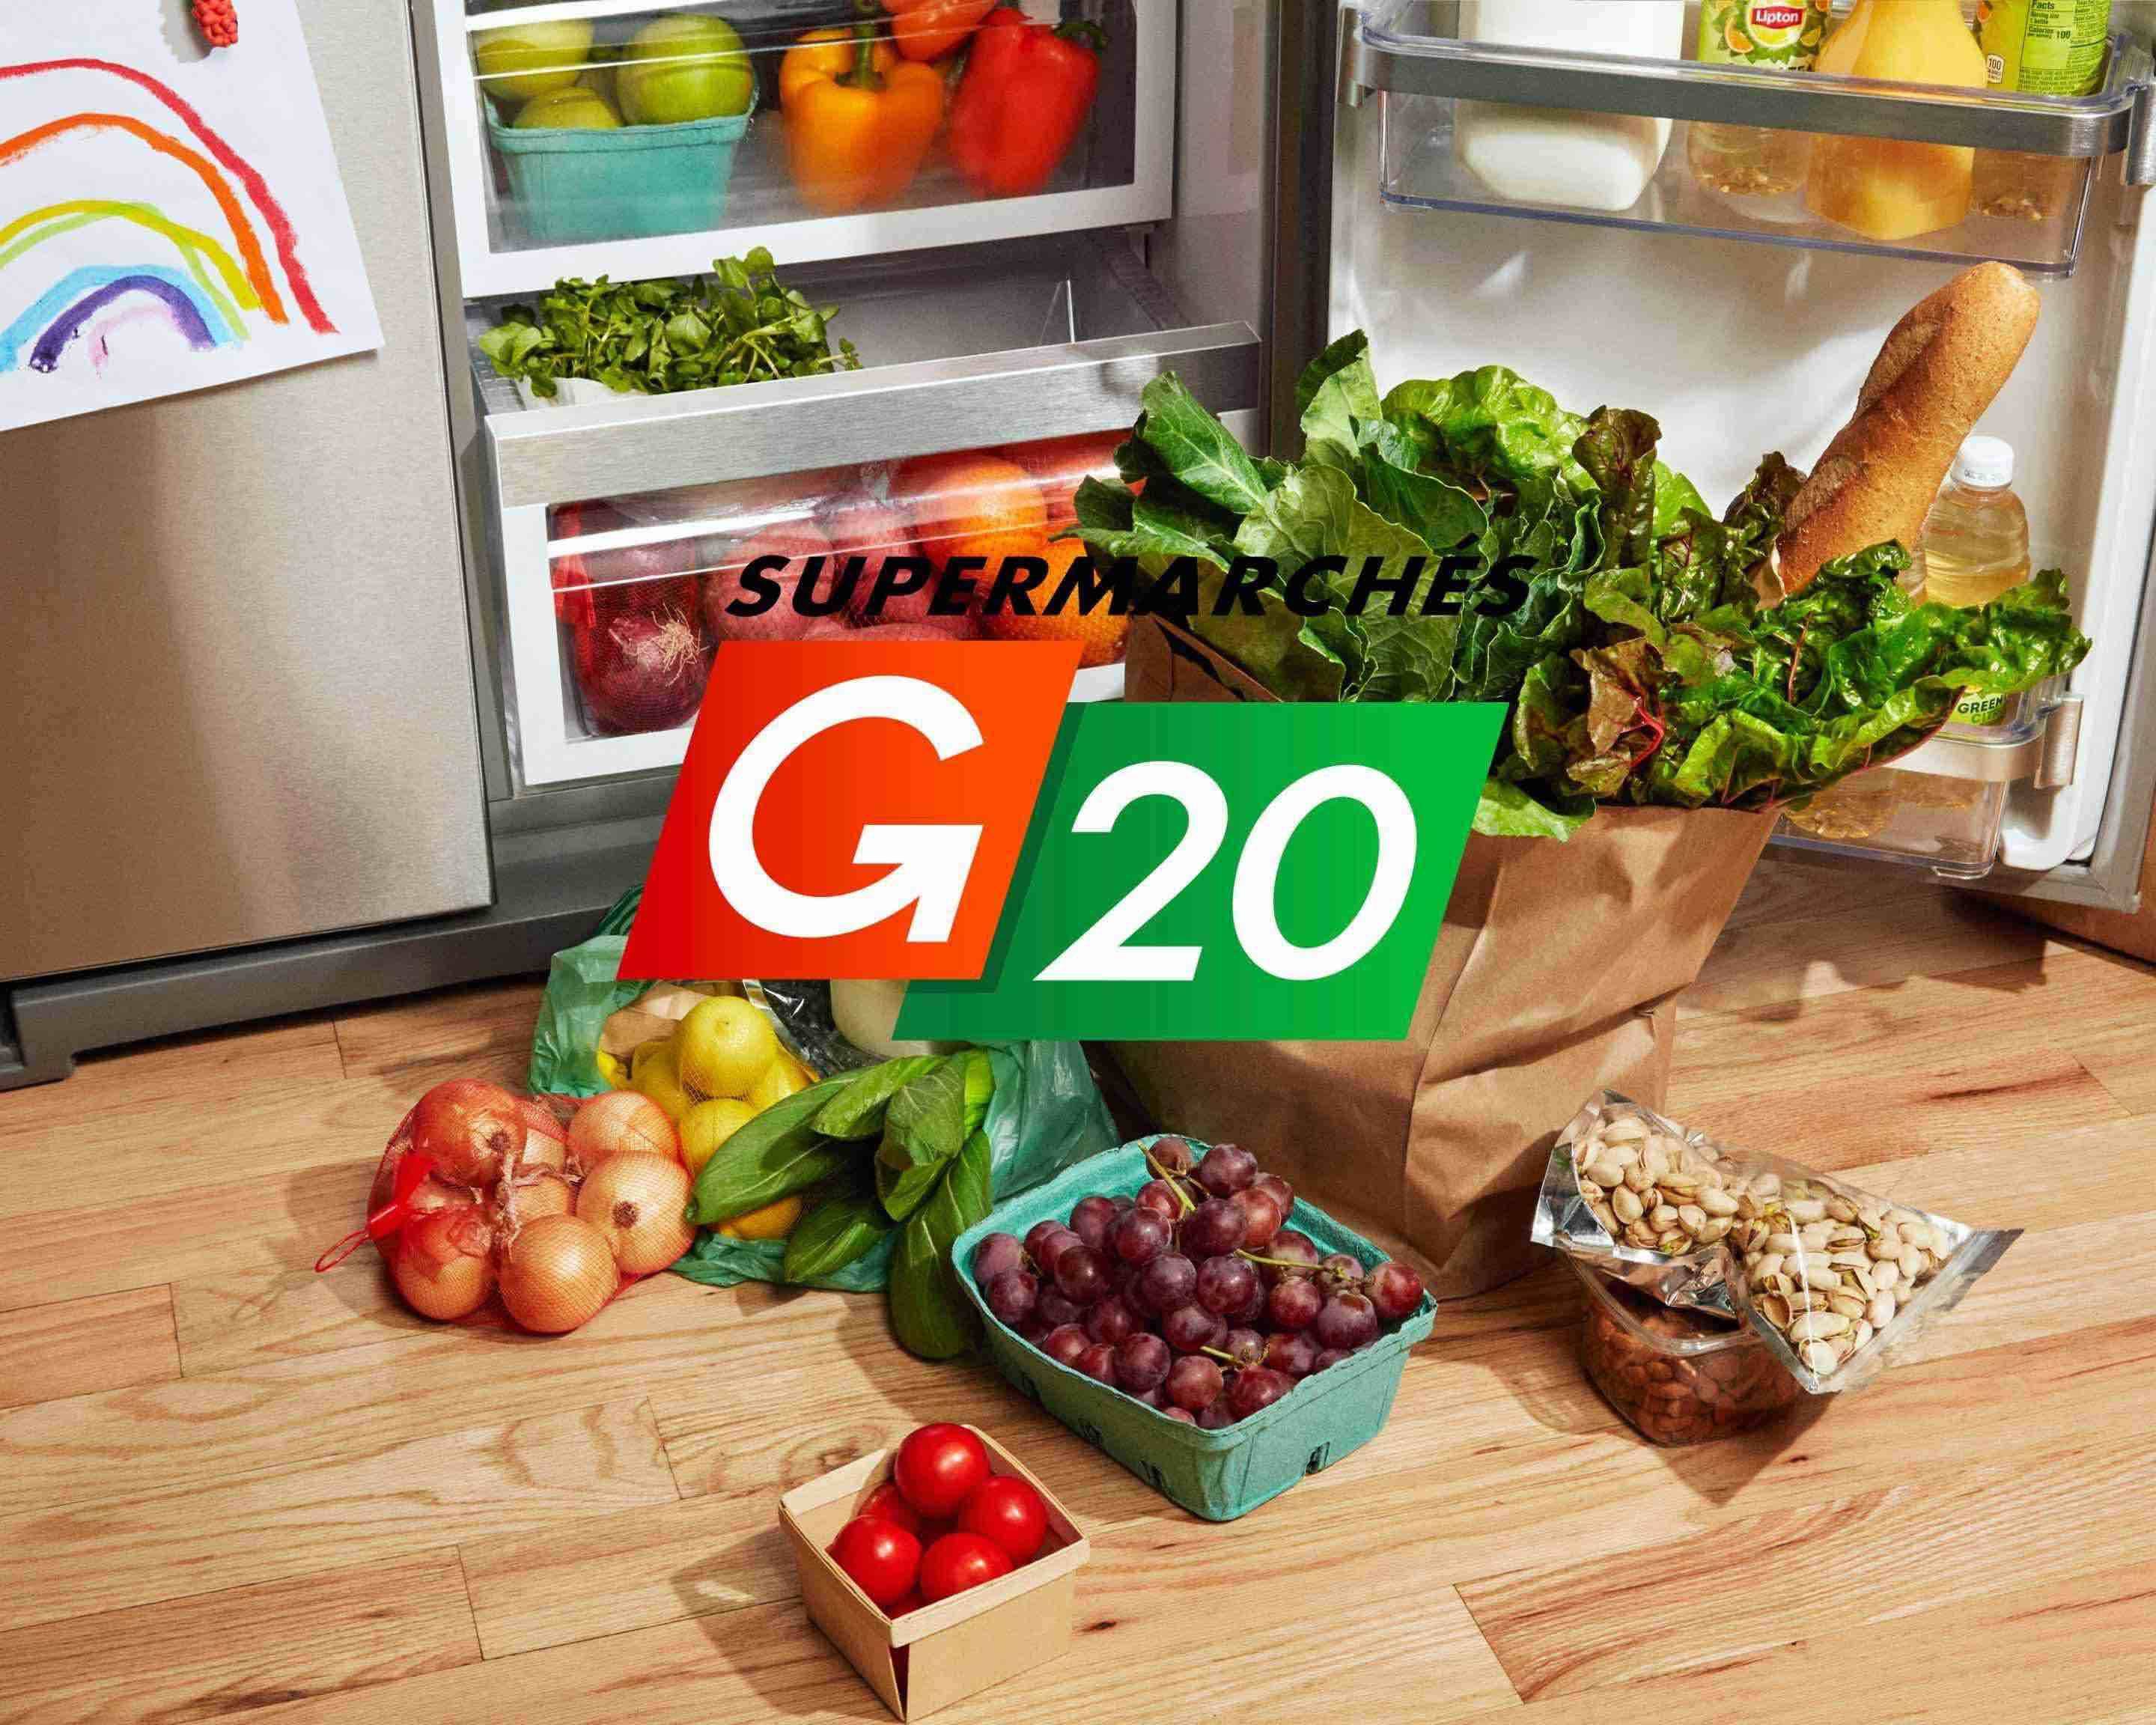 Livraison Supermarché G20 - Cloys à Paris - Menu et prix